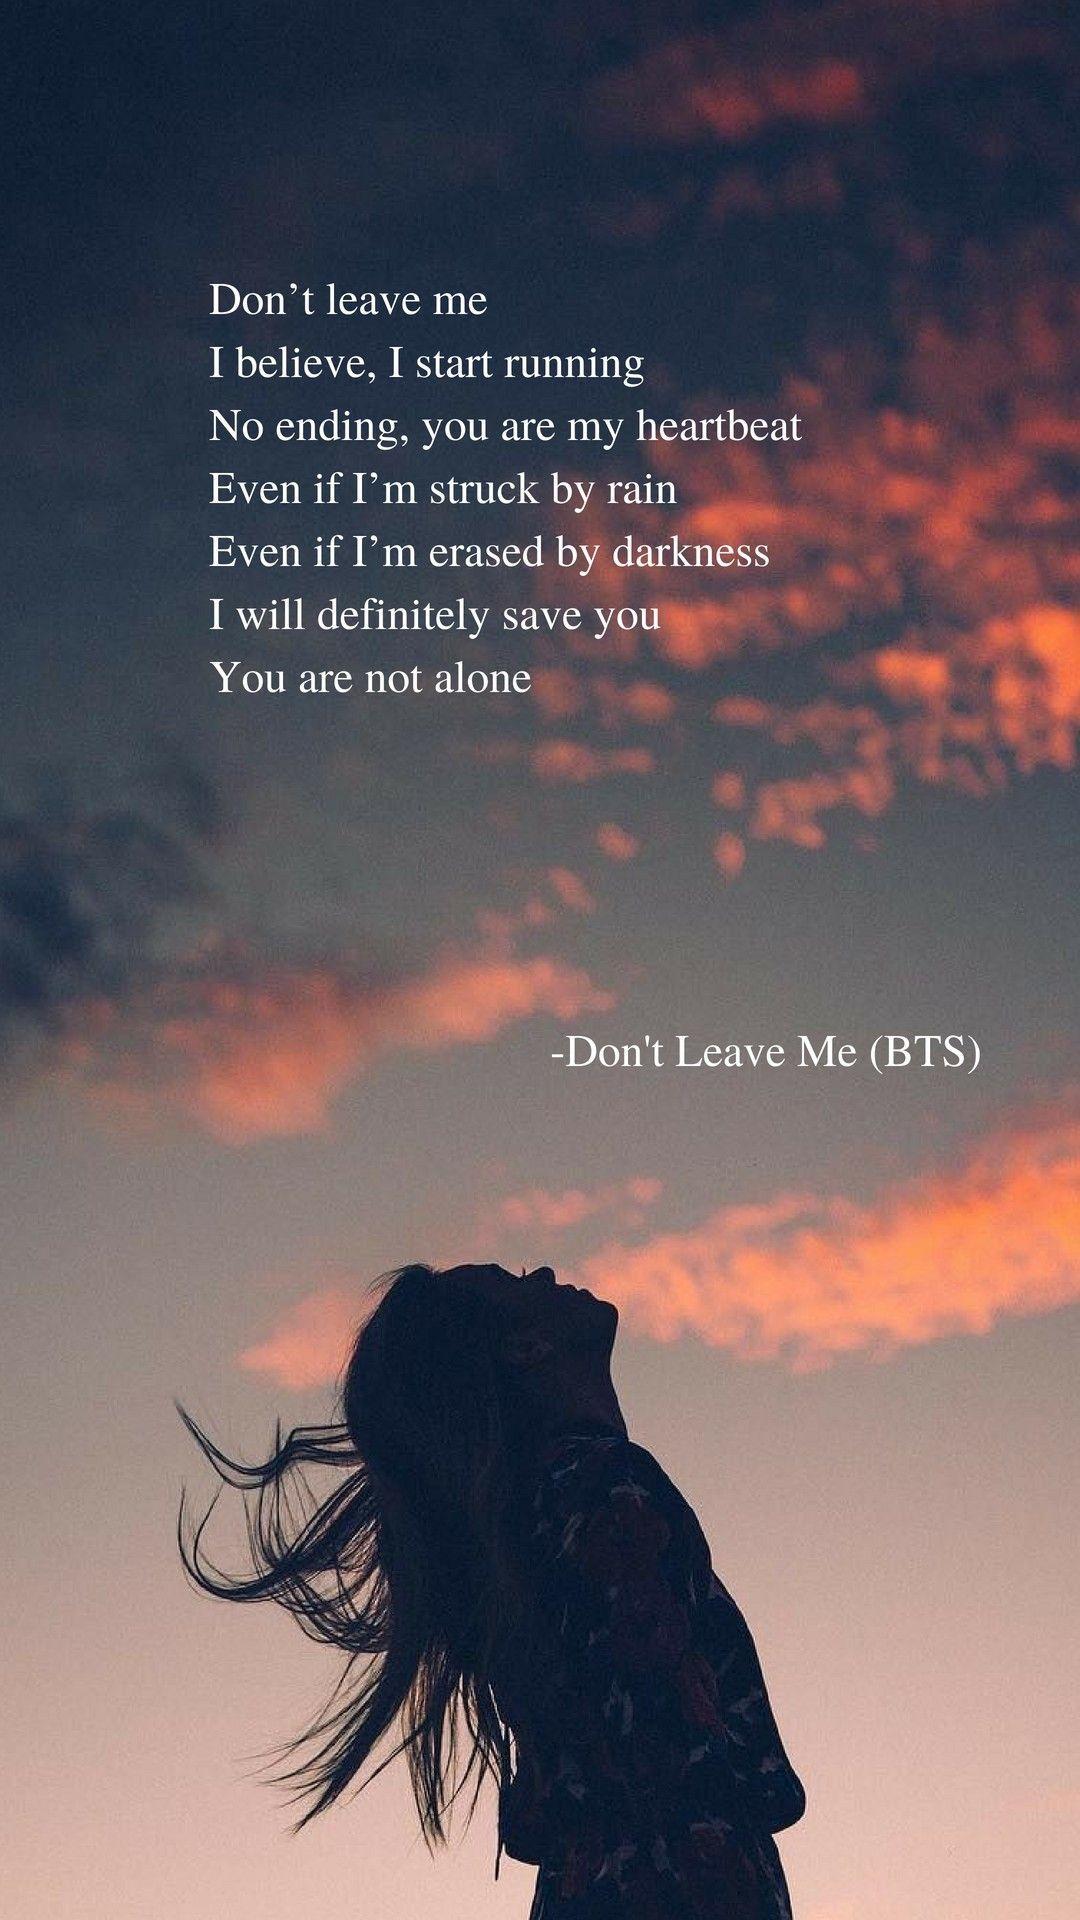 Don't Leave Me (BTS) lyrics wallpaper. PONTOSAN!!! ekkor: 2018